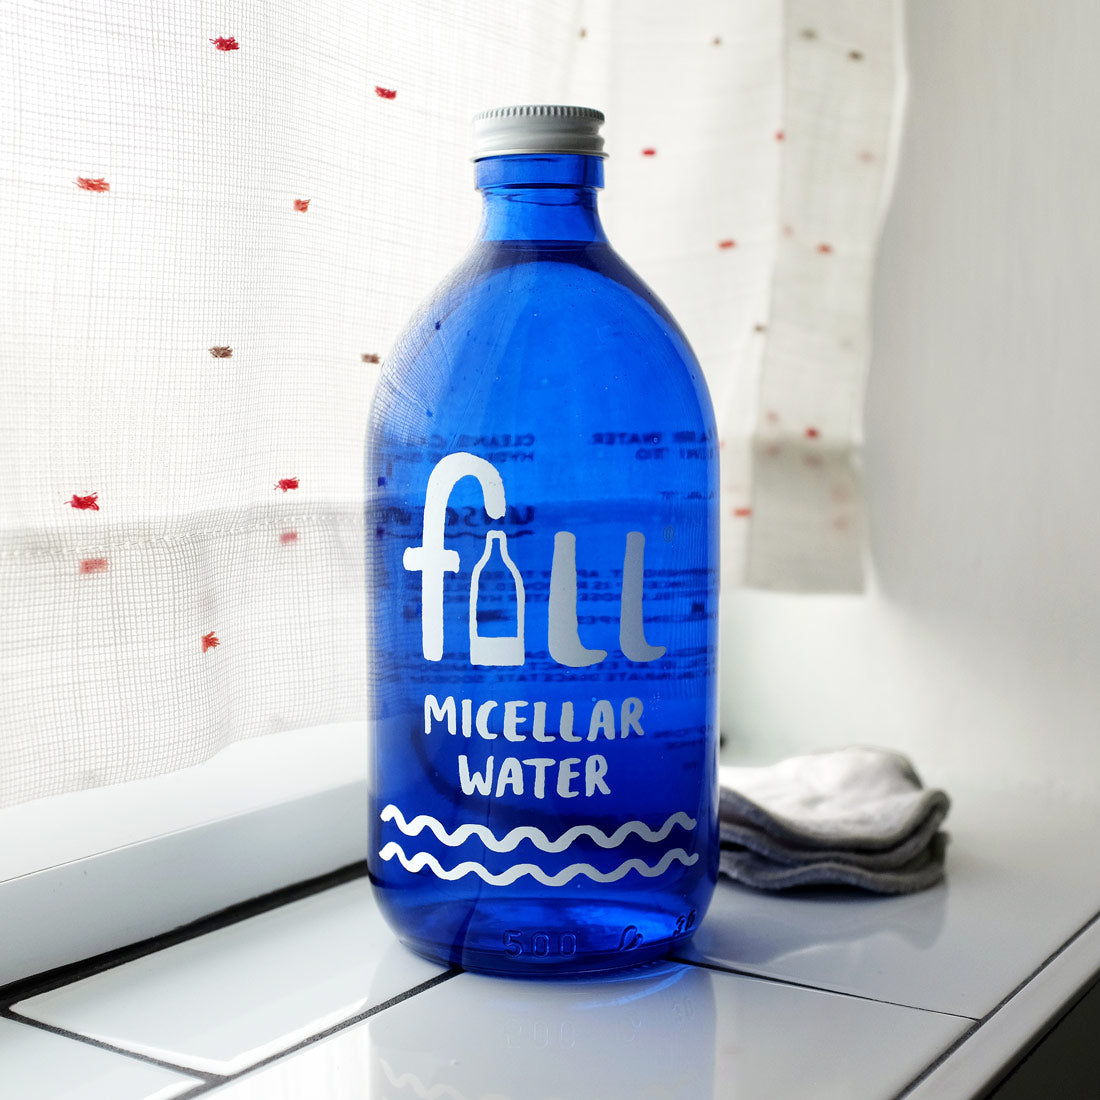 Micellar Water in Blue Glass Bottle